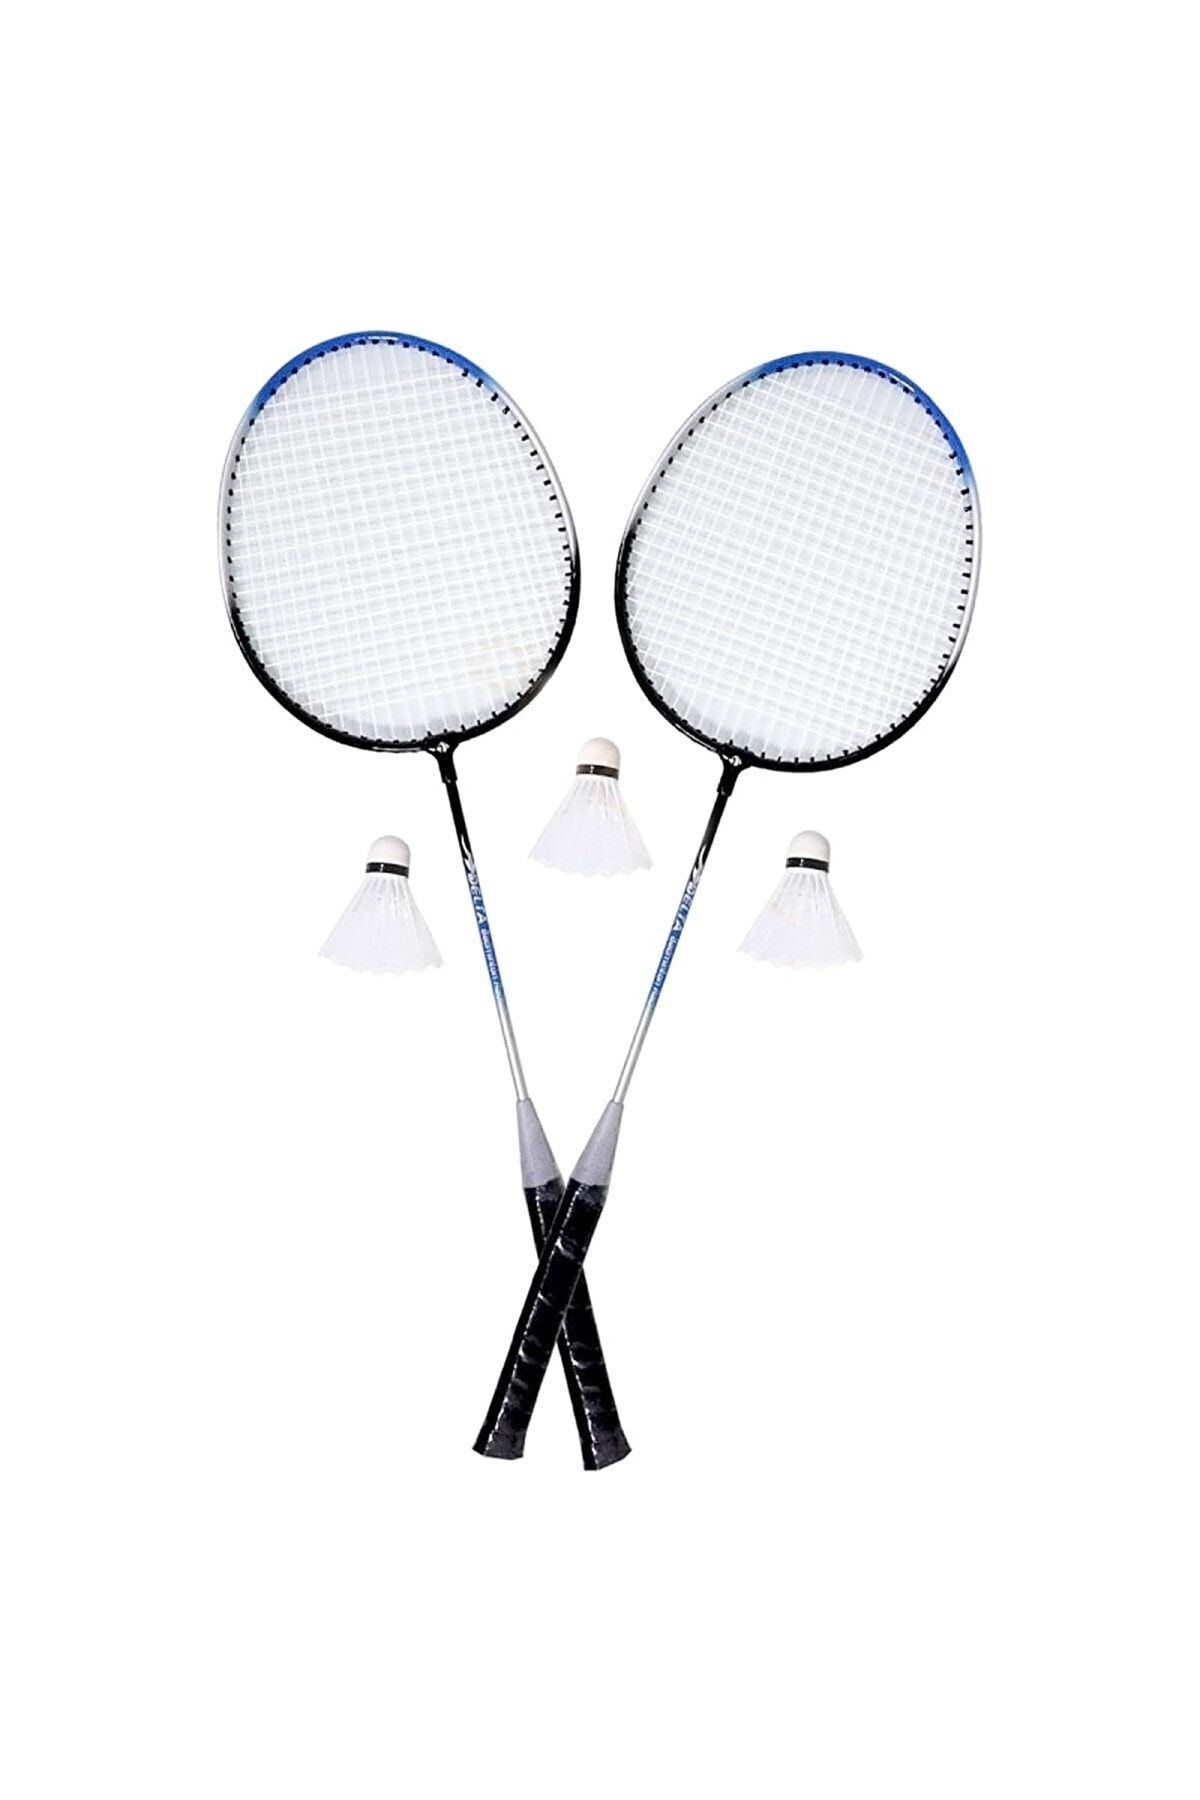 Tosima Çantalı Badminton Seti 2 Adet Badminton Raketi 3 Adet Badminton Topu Ve Taşıma Çantası